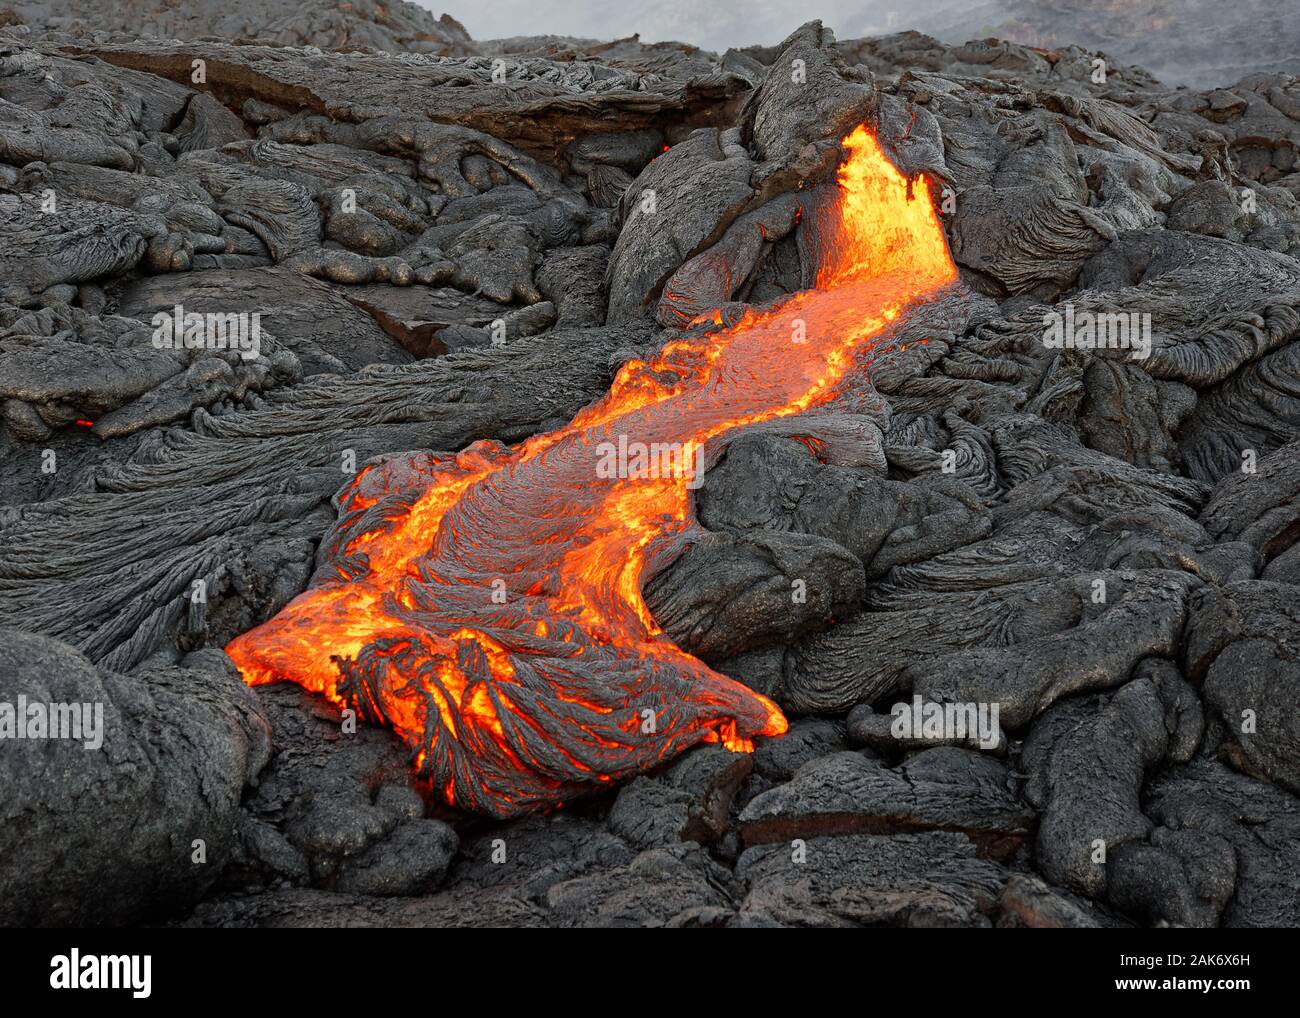 Heiße Magma eines aktiven Lavastrom Austritt aus einer Spalte, die Hitze der glühende Lava macht die Luft flimmert, die Lava langsam abkühlt und erstarrt Stockfoto